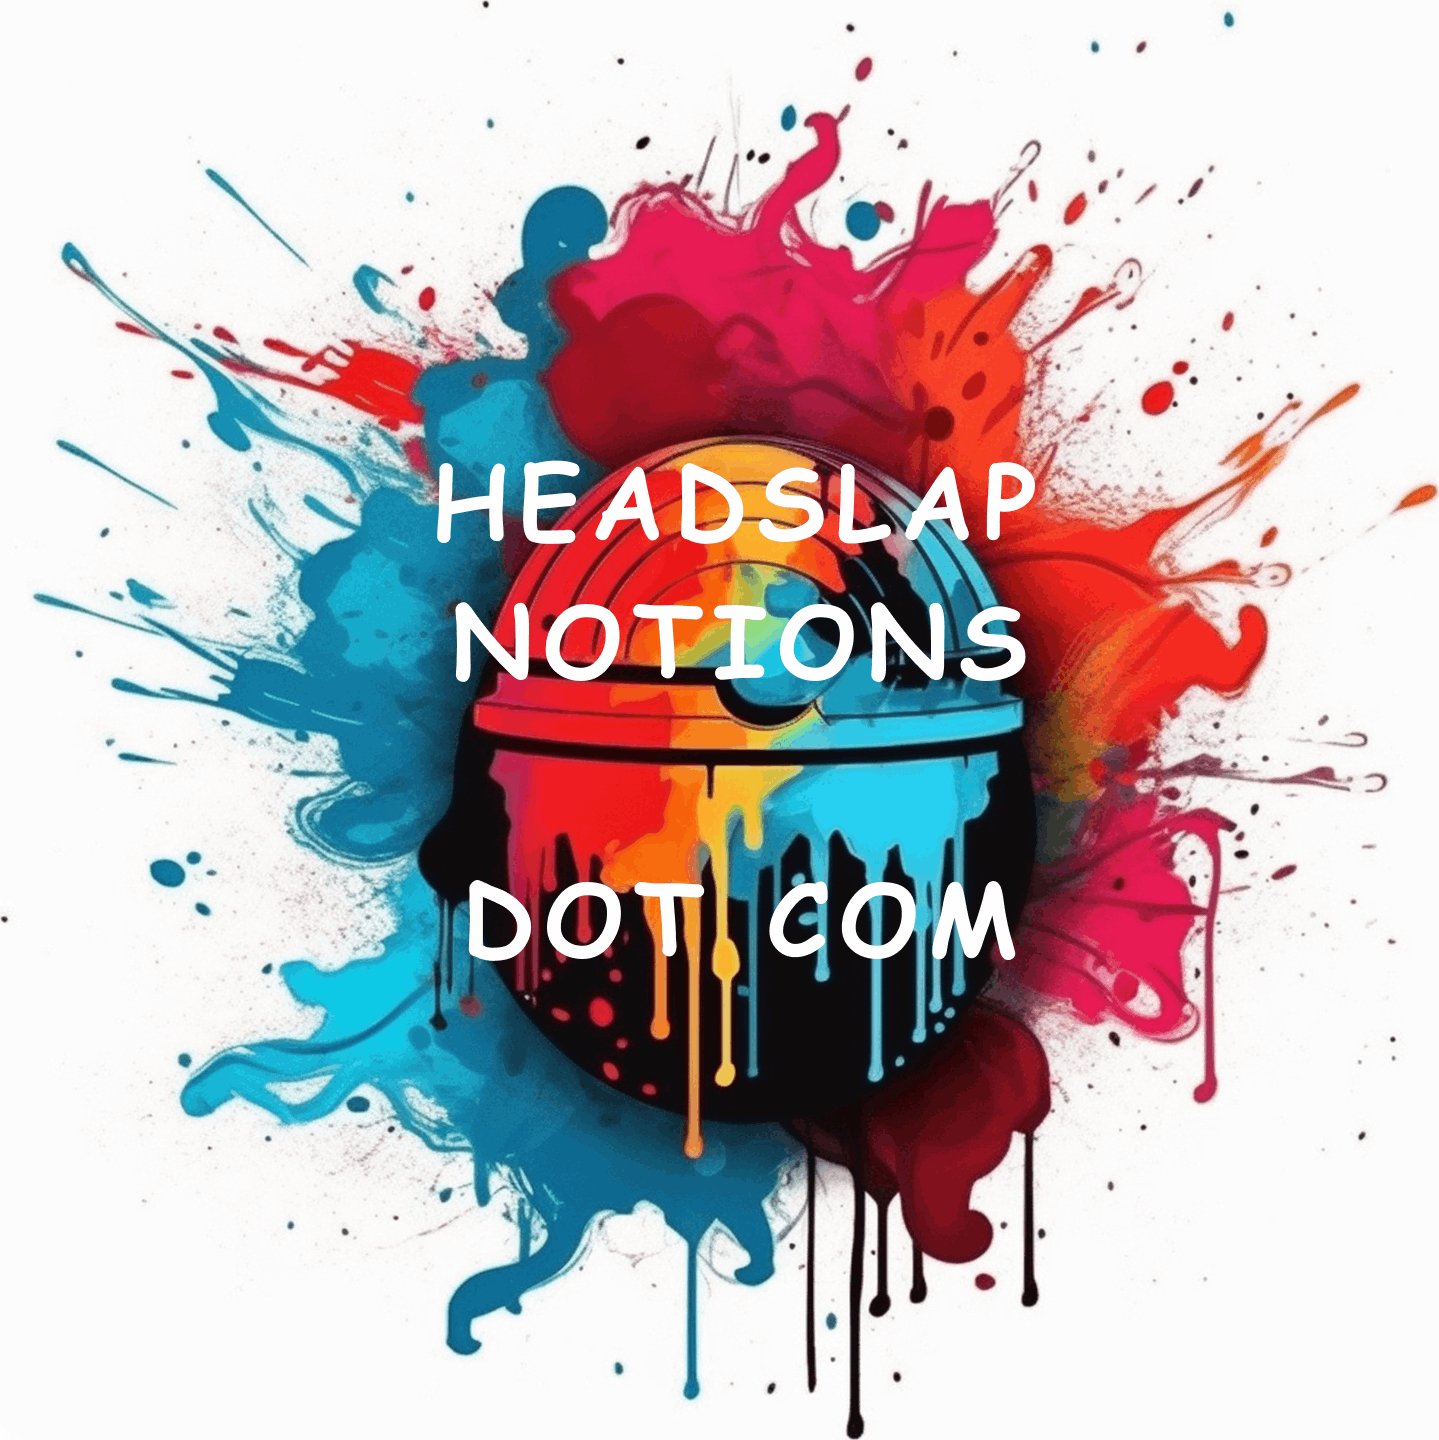 Headslap Notions